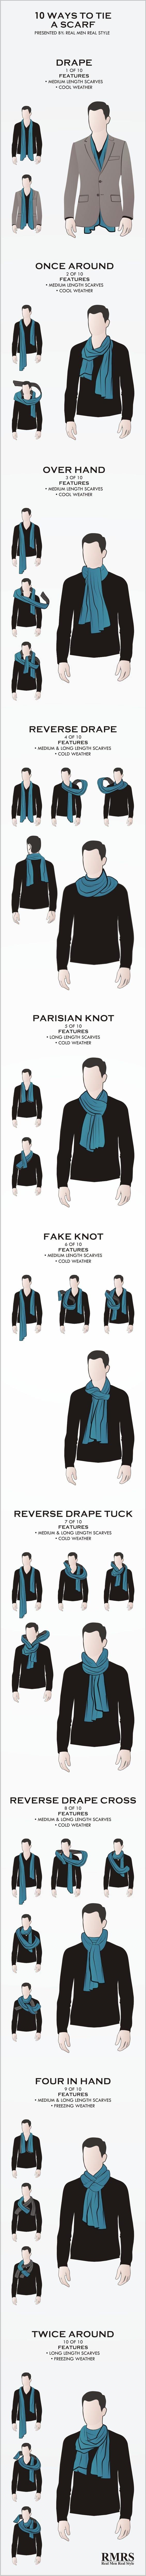 10 façons viriles de nouer des écharpes | Infographie de noeuds de foulard masculin